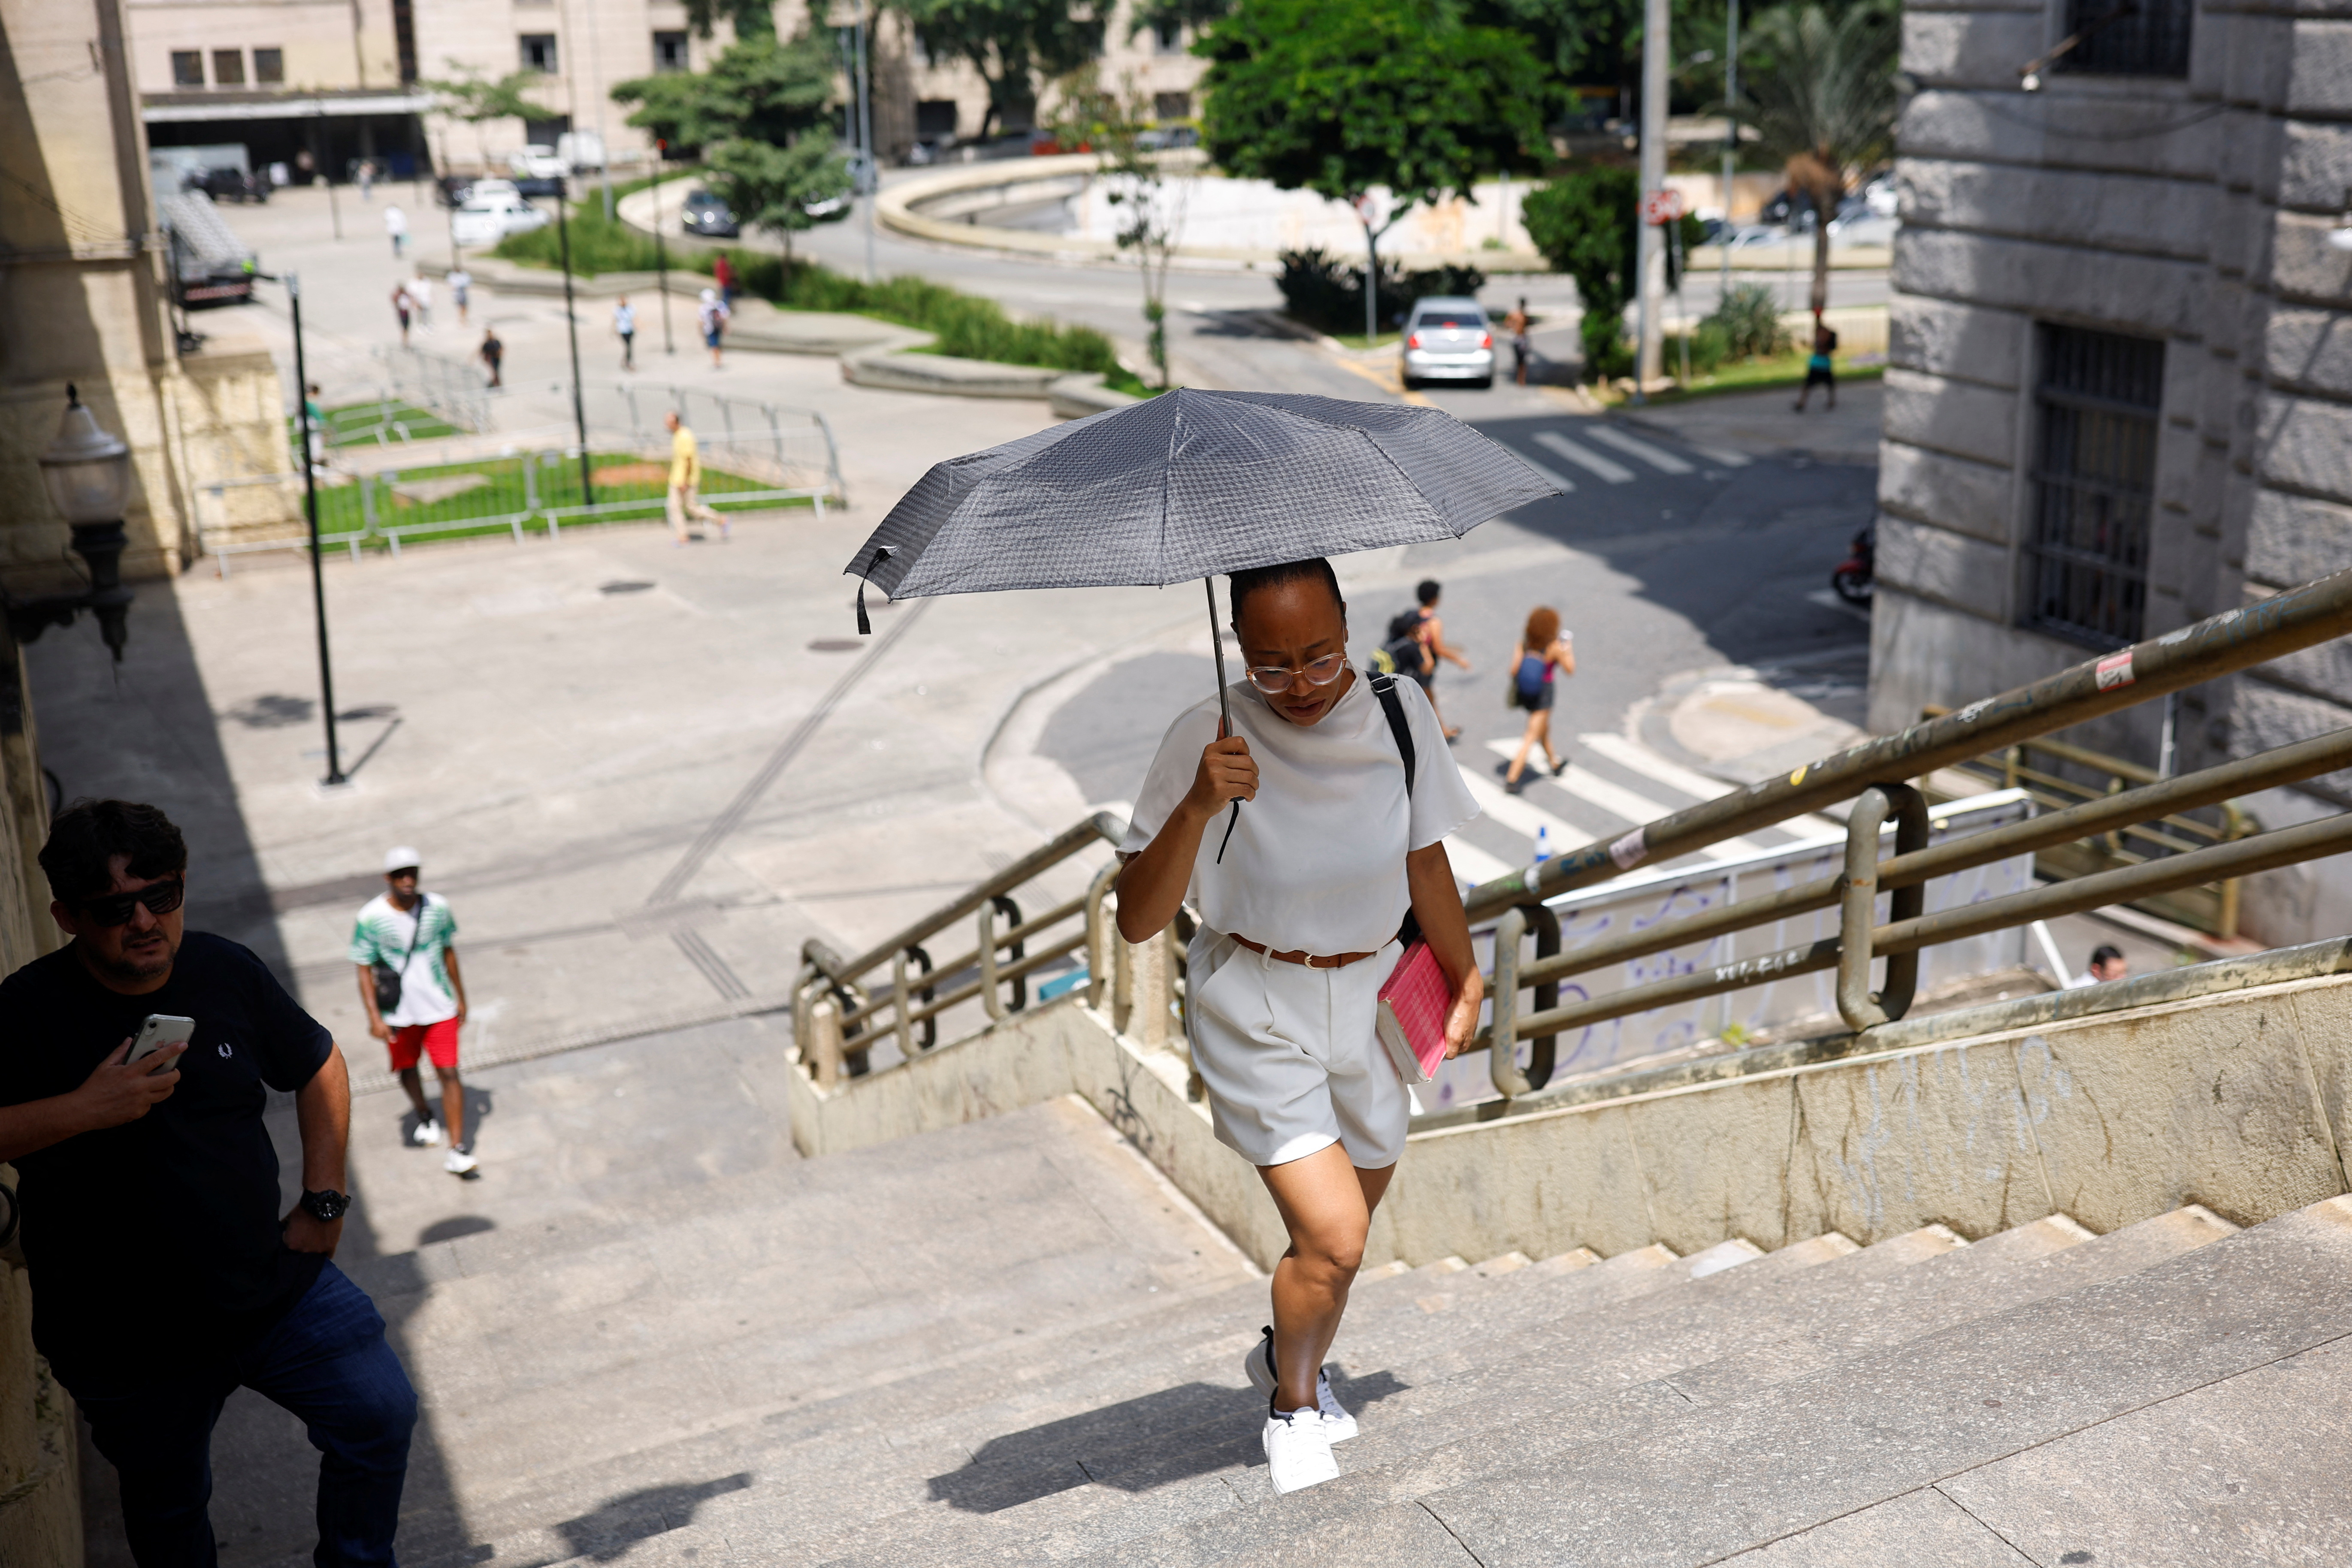 Heat wave hits Sao Paulo